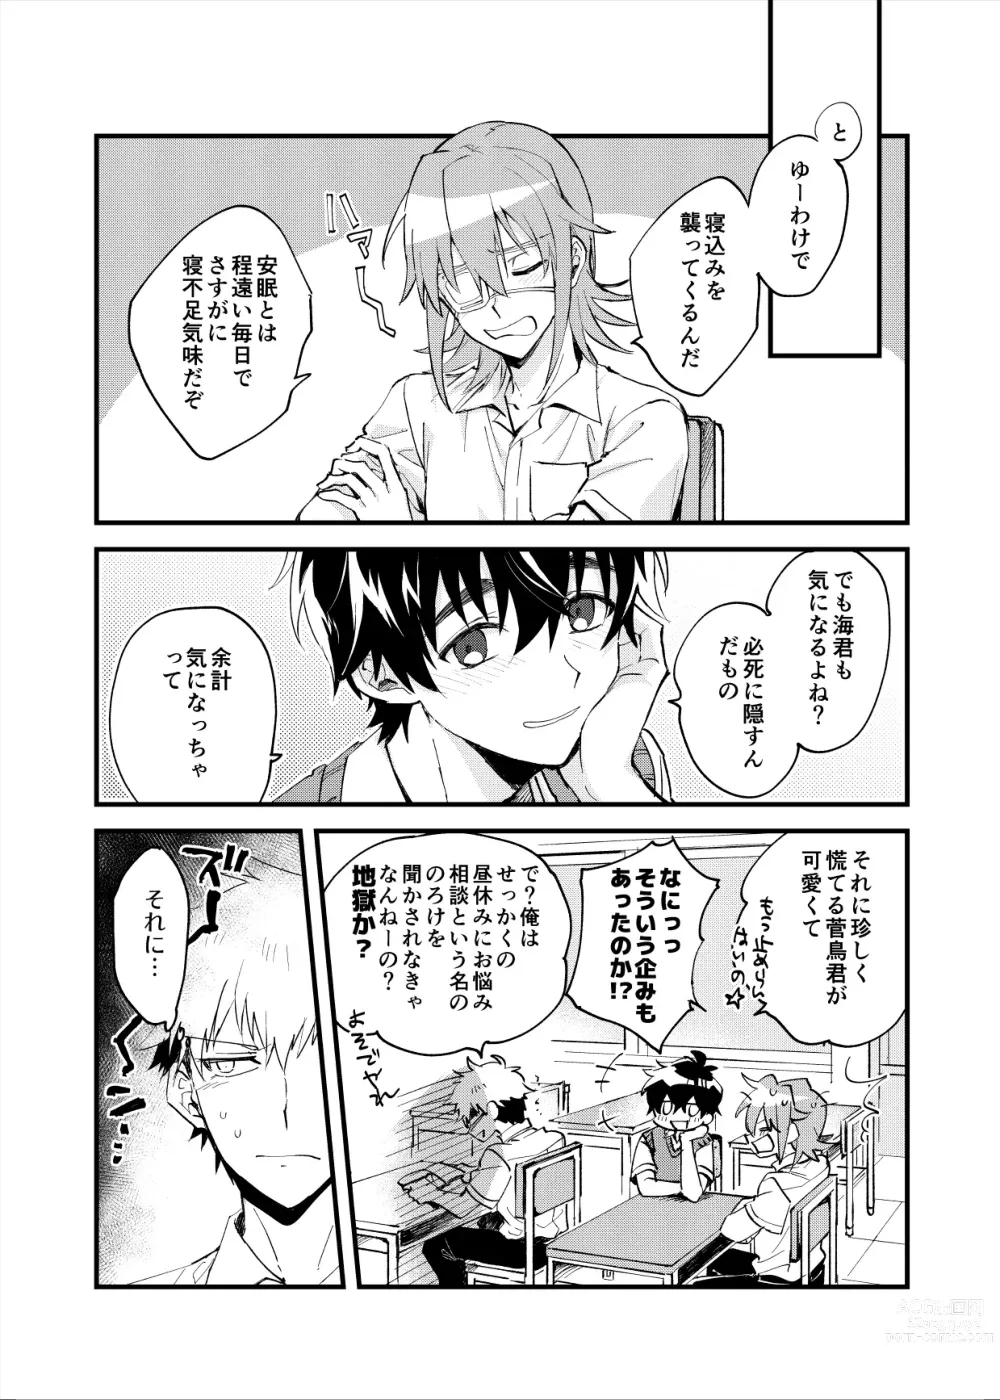 Page 7 of doujinshi Yoaketa Mukou ni Mieru Hoshi